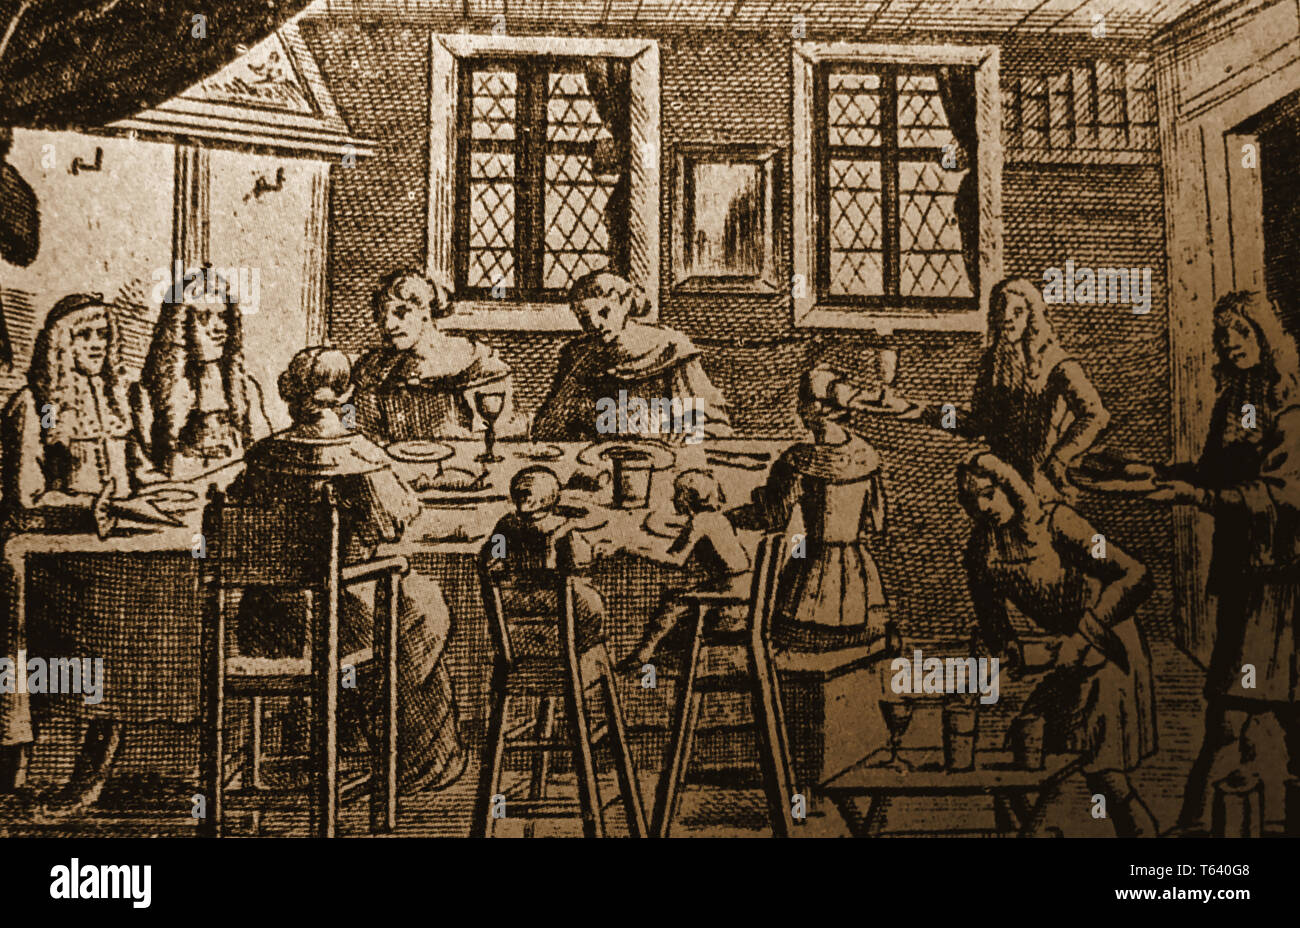 Eine alte Drucken aus dem 17. Jahrhundert heimische Szene in einer oberen Klasse Family House, Knechte Servieren von Speisen und Wein, ein Spiegel an der Wand und zwei Kinder Hochstühle. Stockfoto